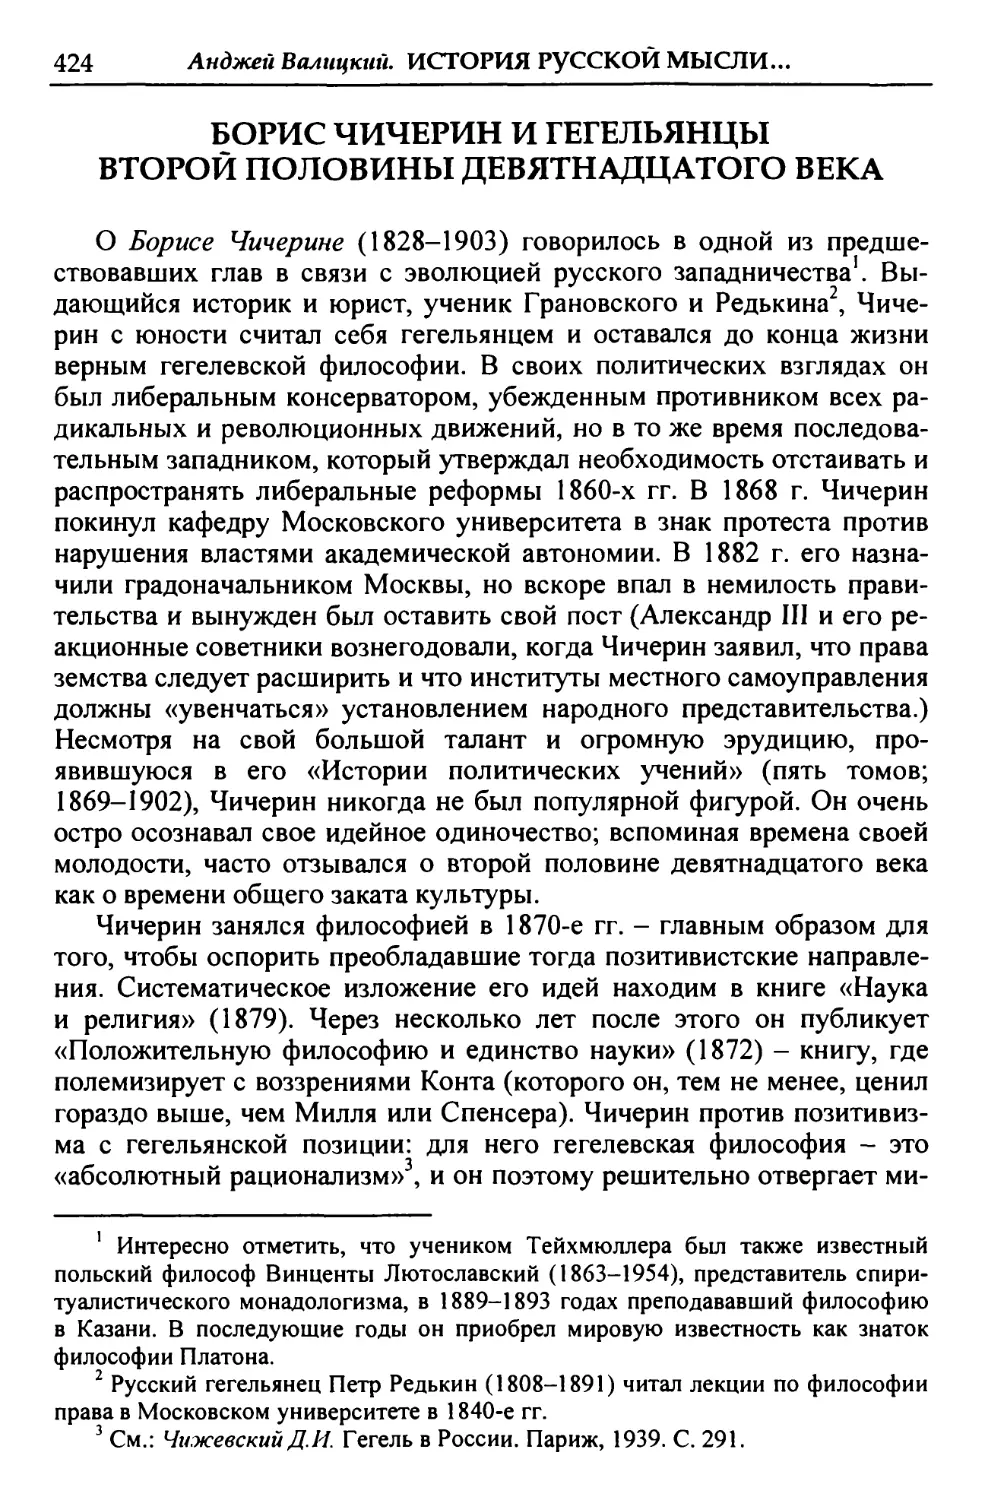 Борис Чичерин и гегельянцы второй половины девятнадцатого века